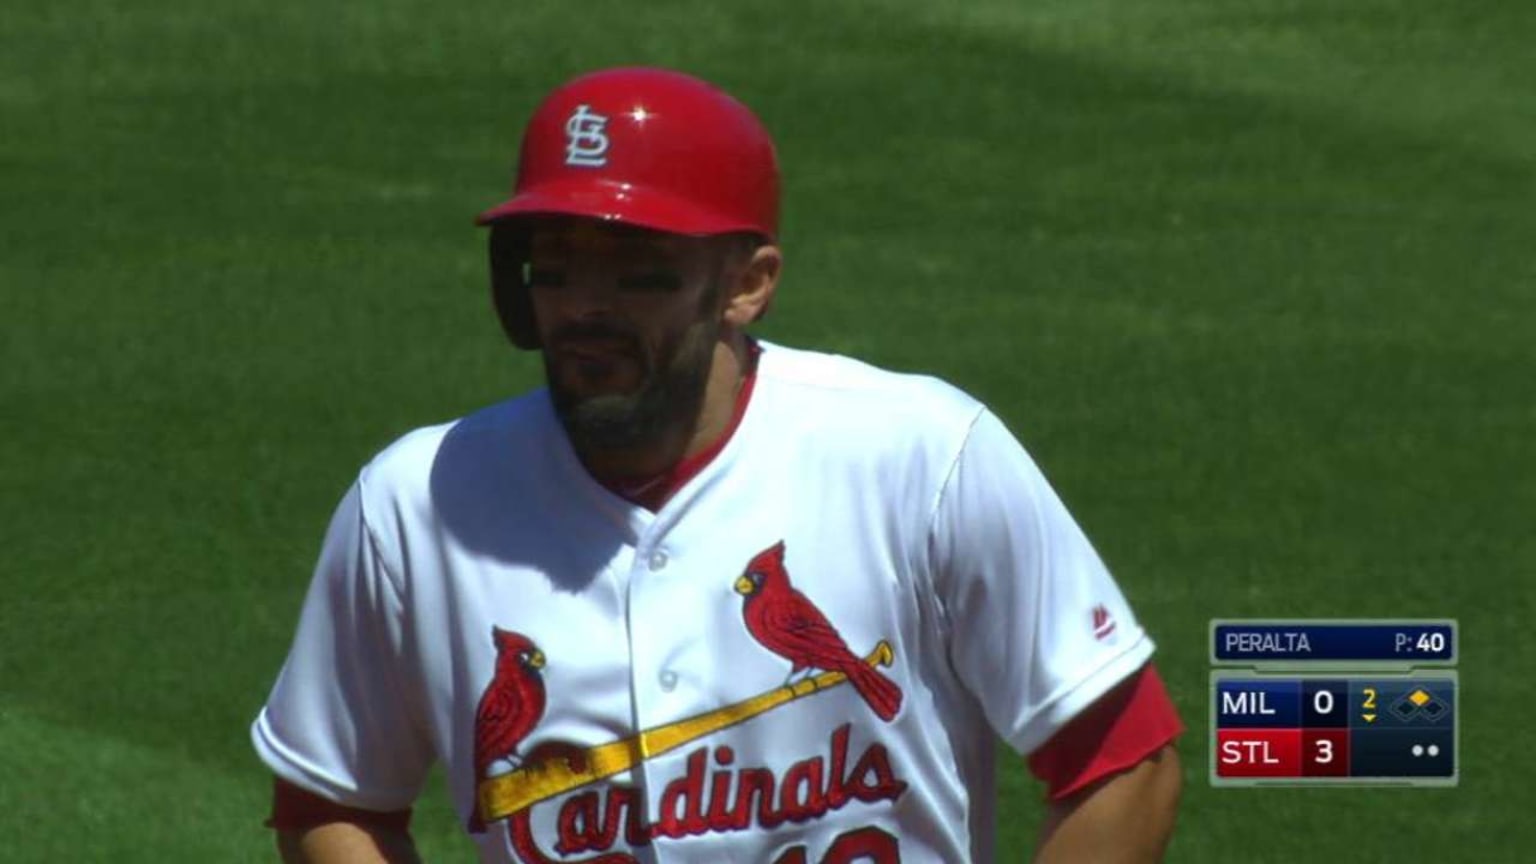 MLB St. Louis Cardinals (Matt Carpenter) Men's Replica Baseball